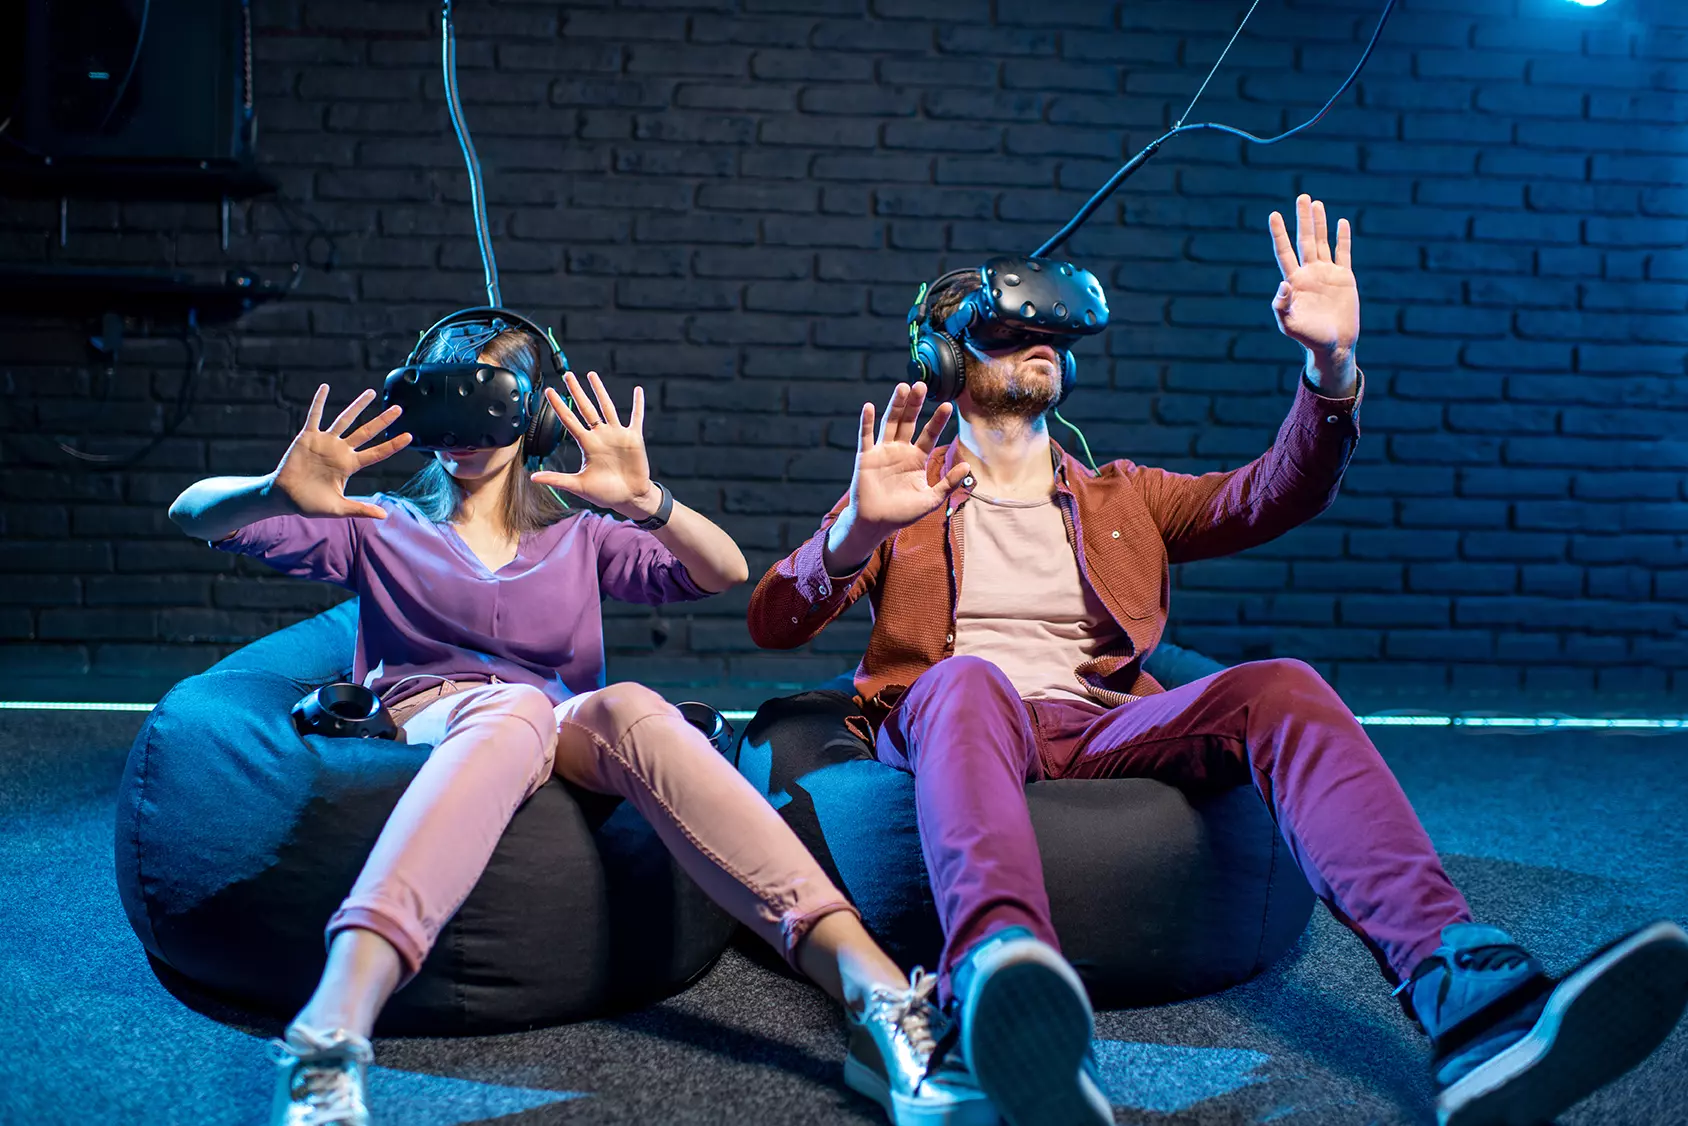 Un hombre y una mujer están sentados en una sala cada uno con visores de realidad virtual representando que Cardinal de Disney podrá convertir guiones en realidad virtual.